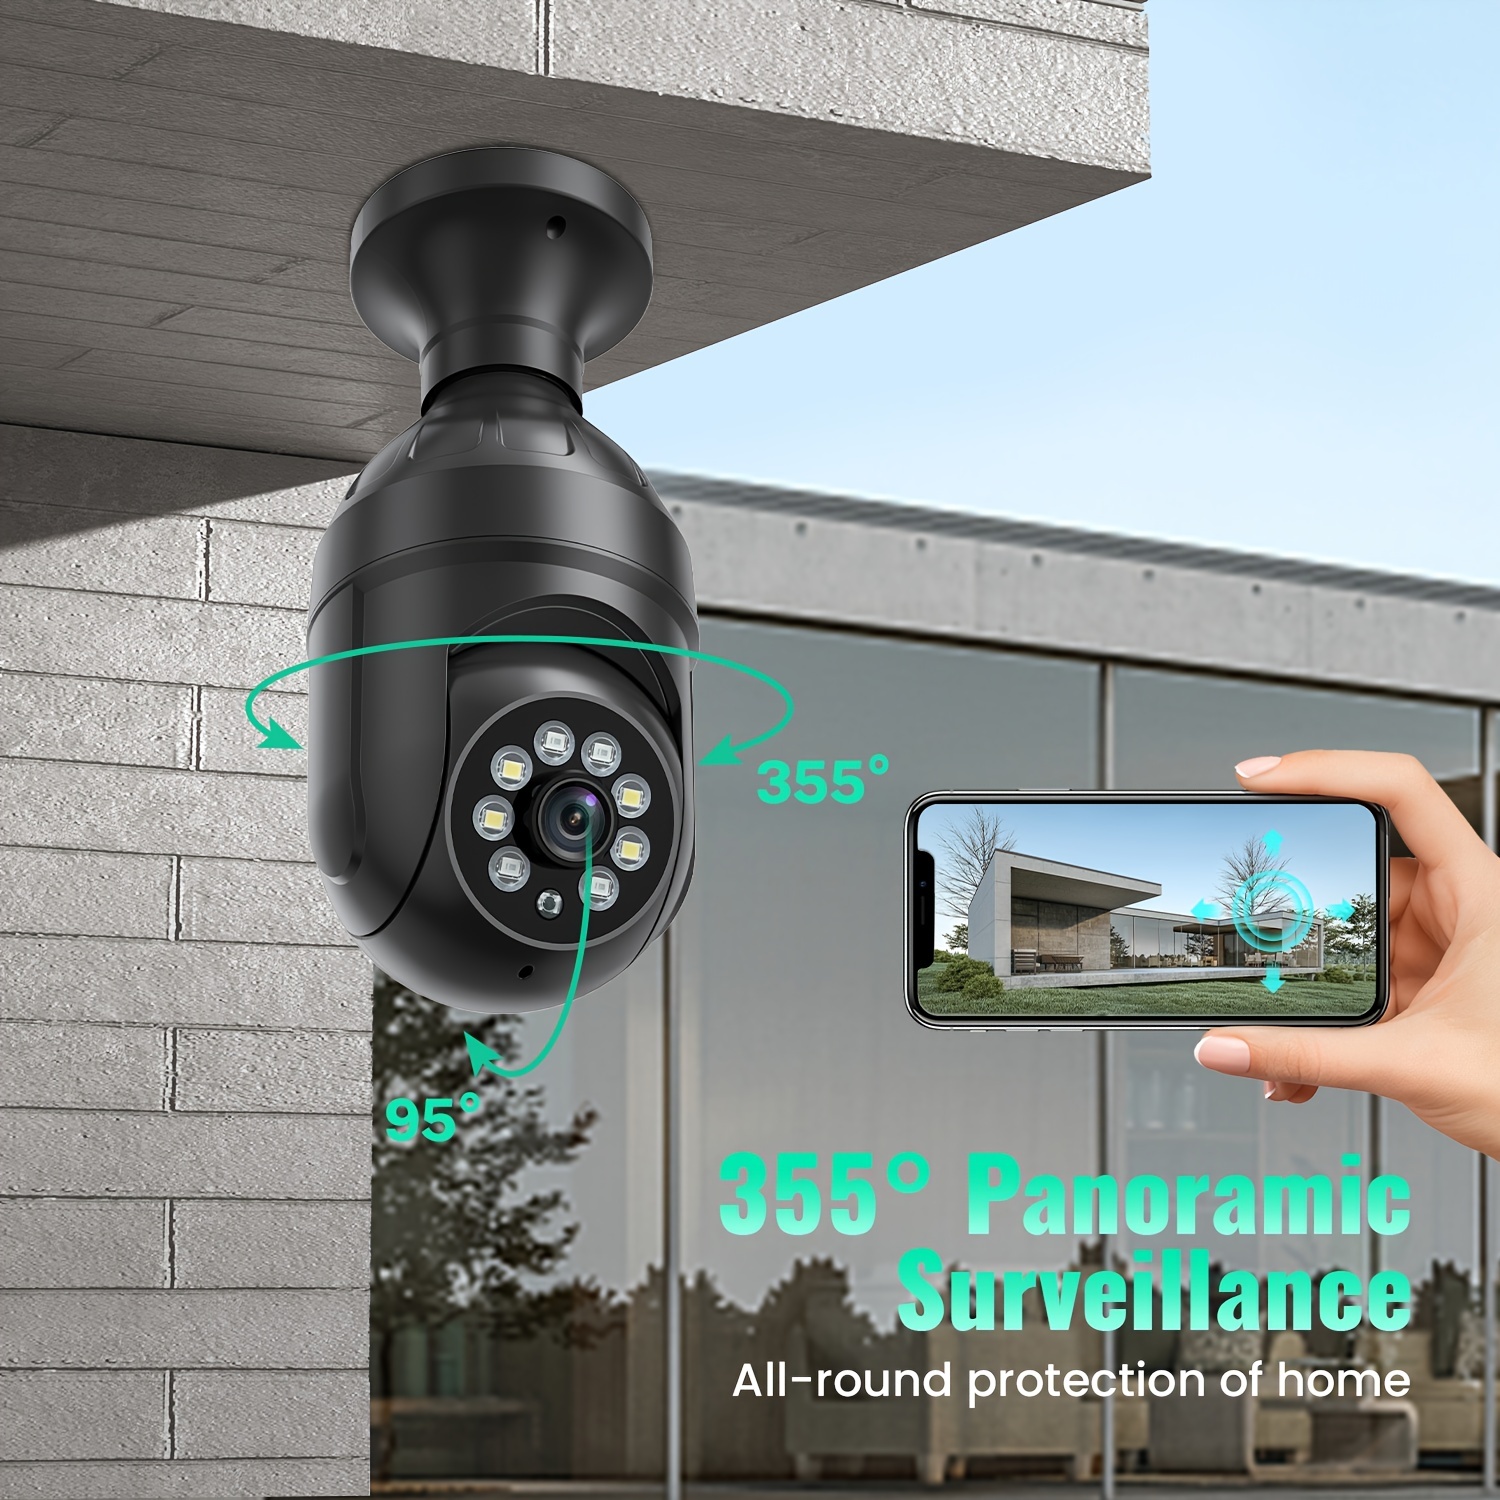 2 Outdoor Camera grises - Caméras de surveillance extérieures sans